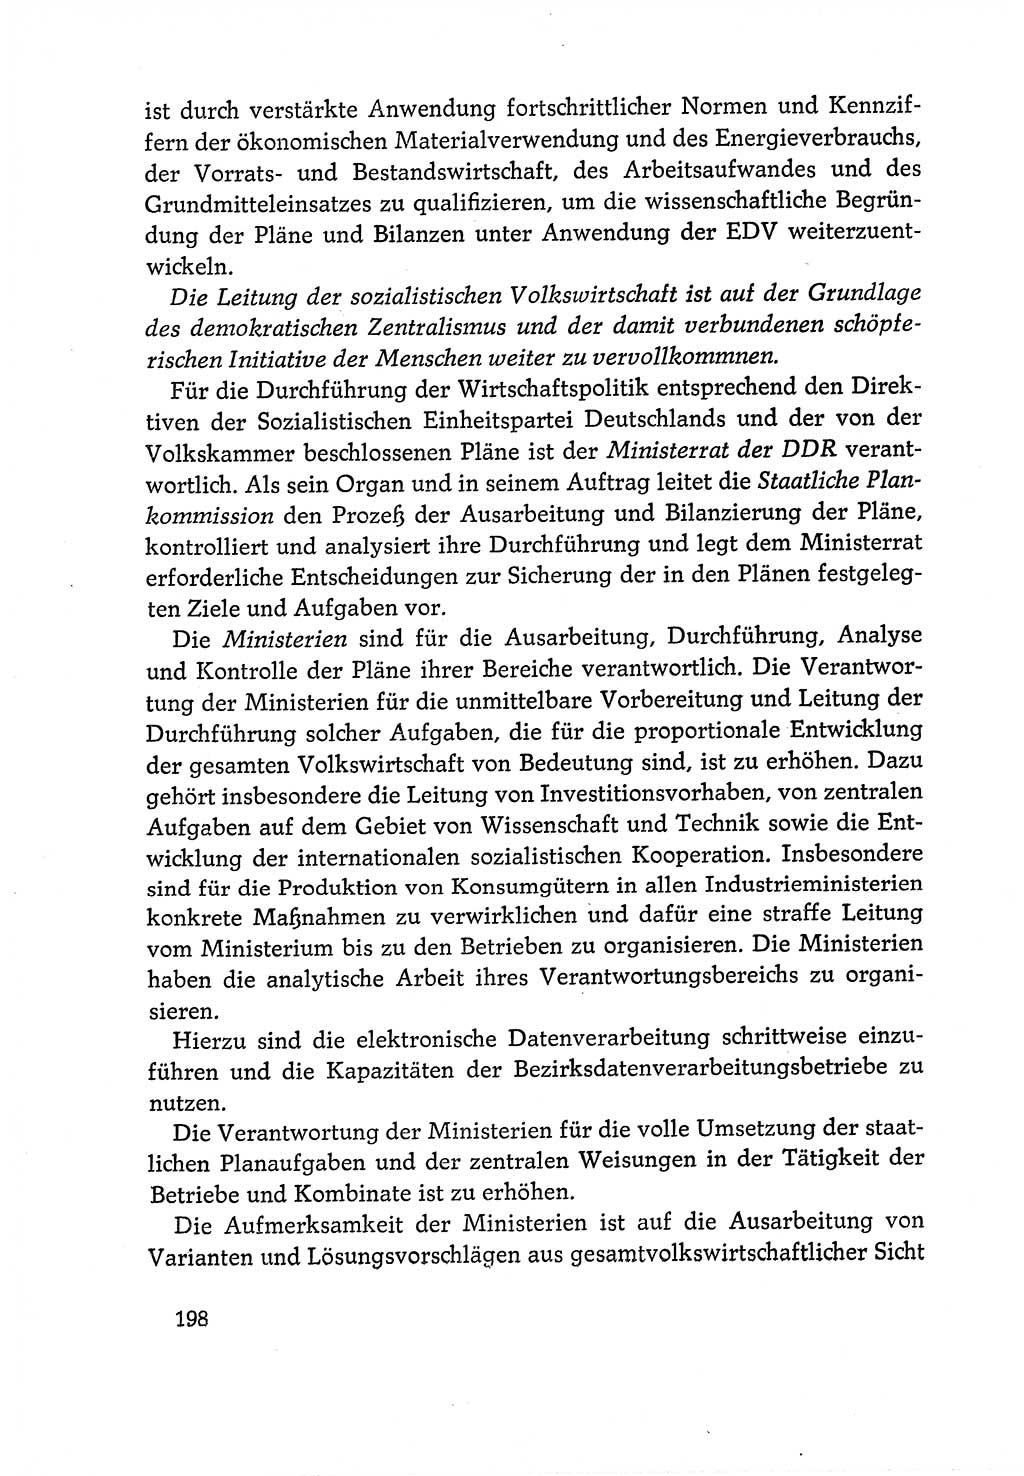 Dokumente der Sozialistischen Einheitspartei Deutschlands (SED) [Deutsche Demokratische Republik (DDR)] 1970-1971, Seite 198 (Dok. SED DDR 1970-1971, S. 198)